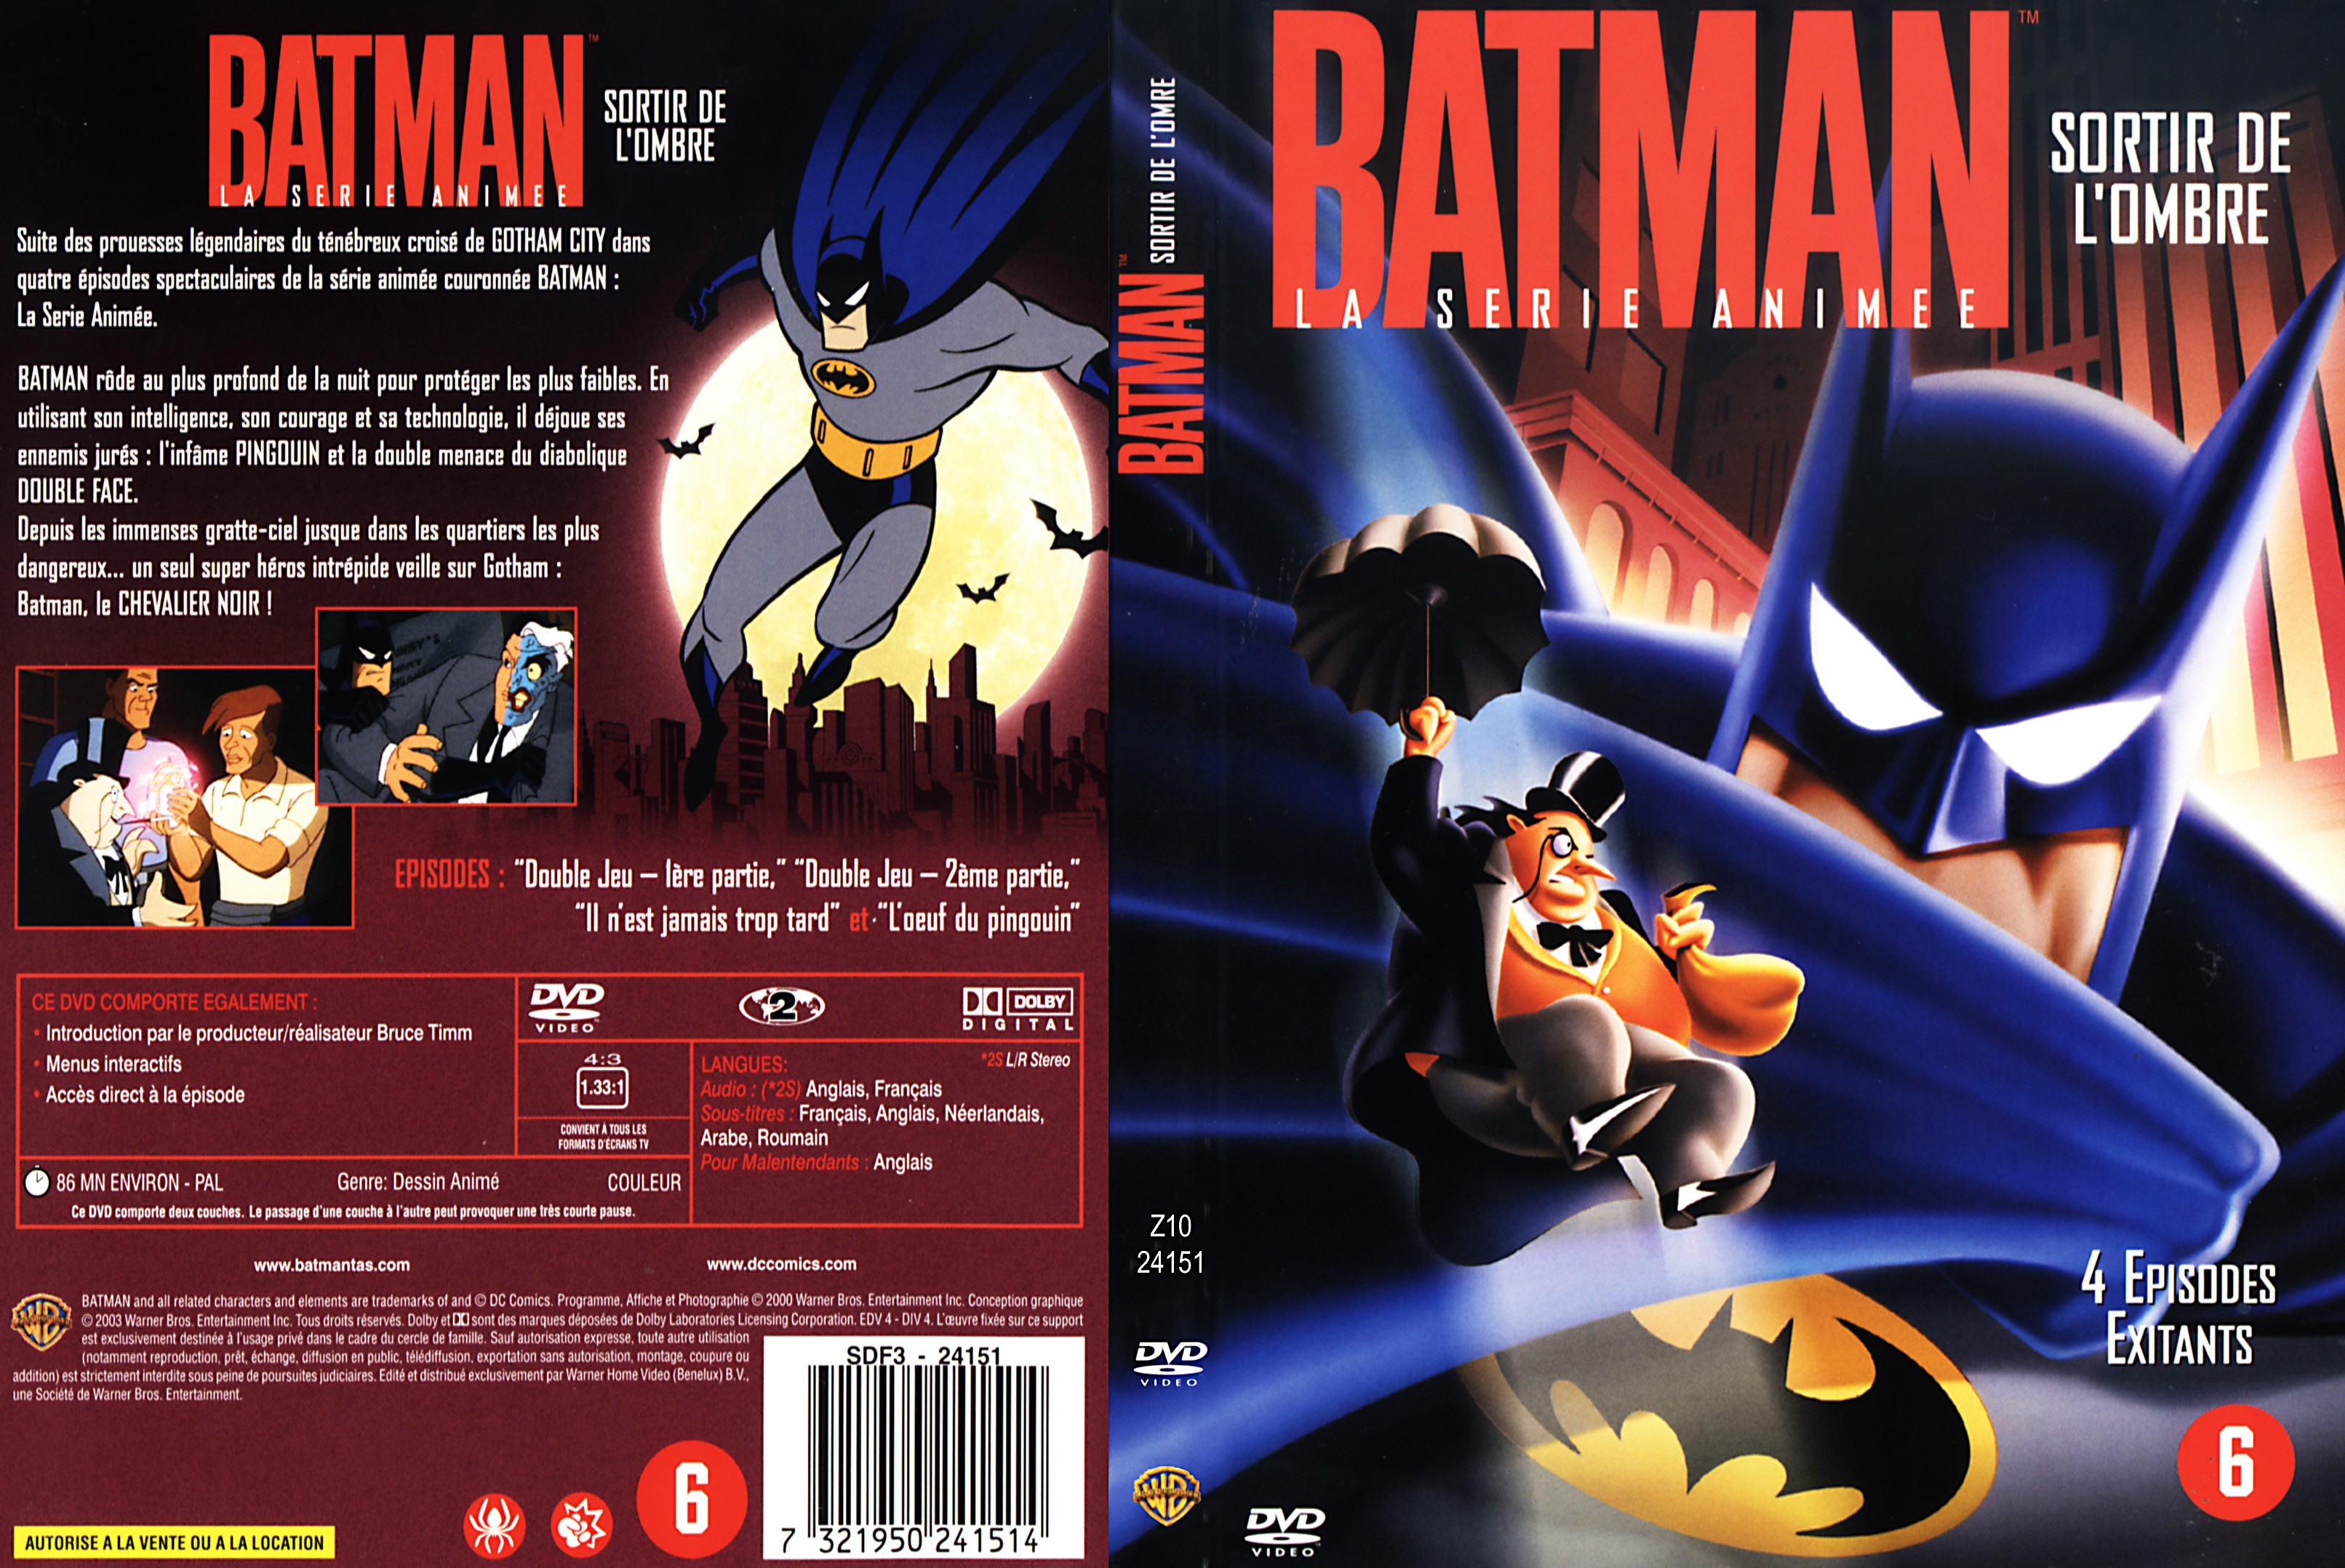 Jaquette DVD Batman sortir de l